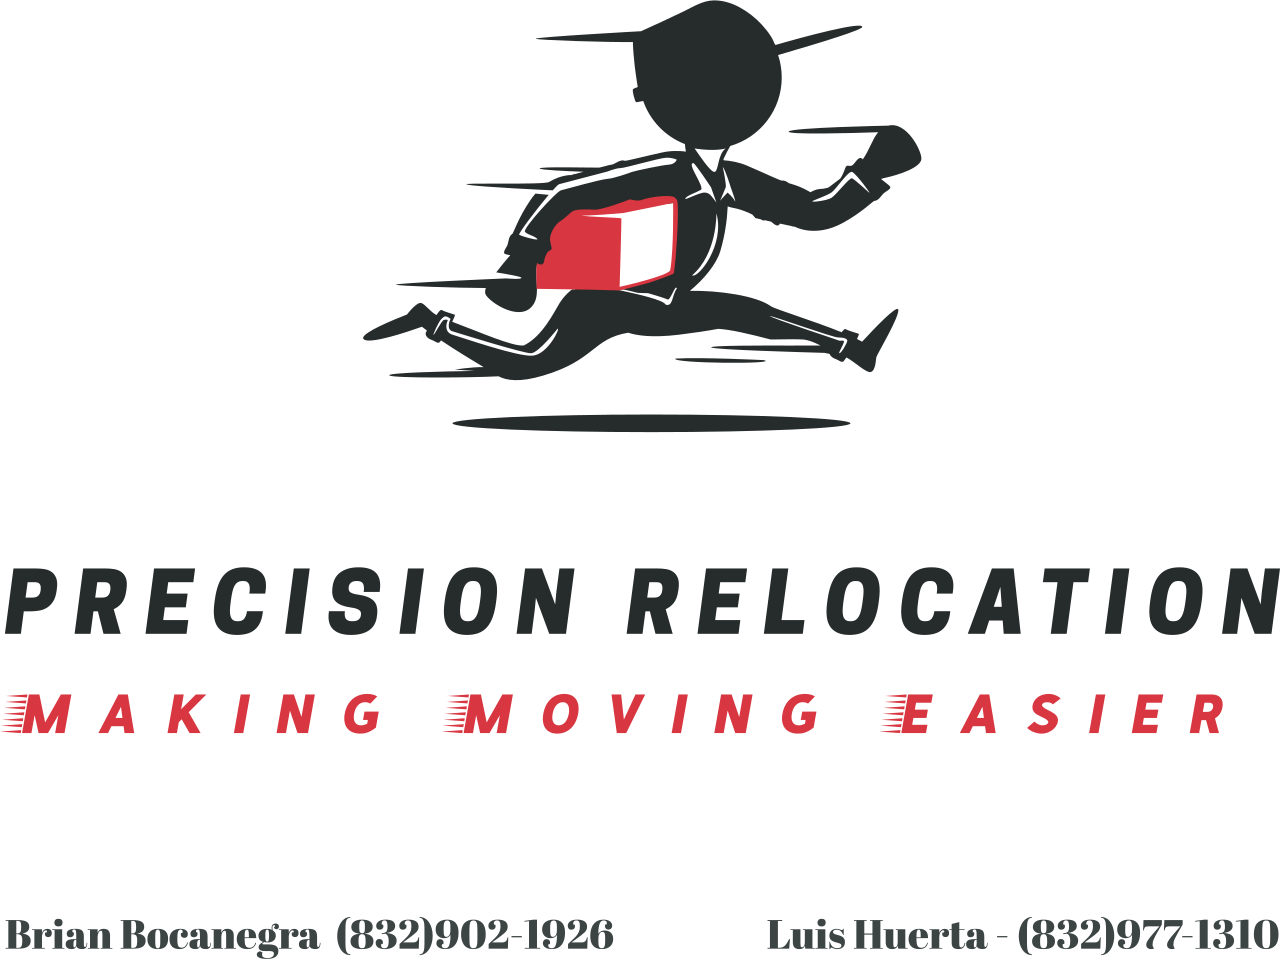 Precision Relocation's logo